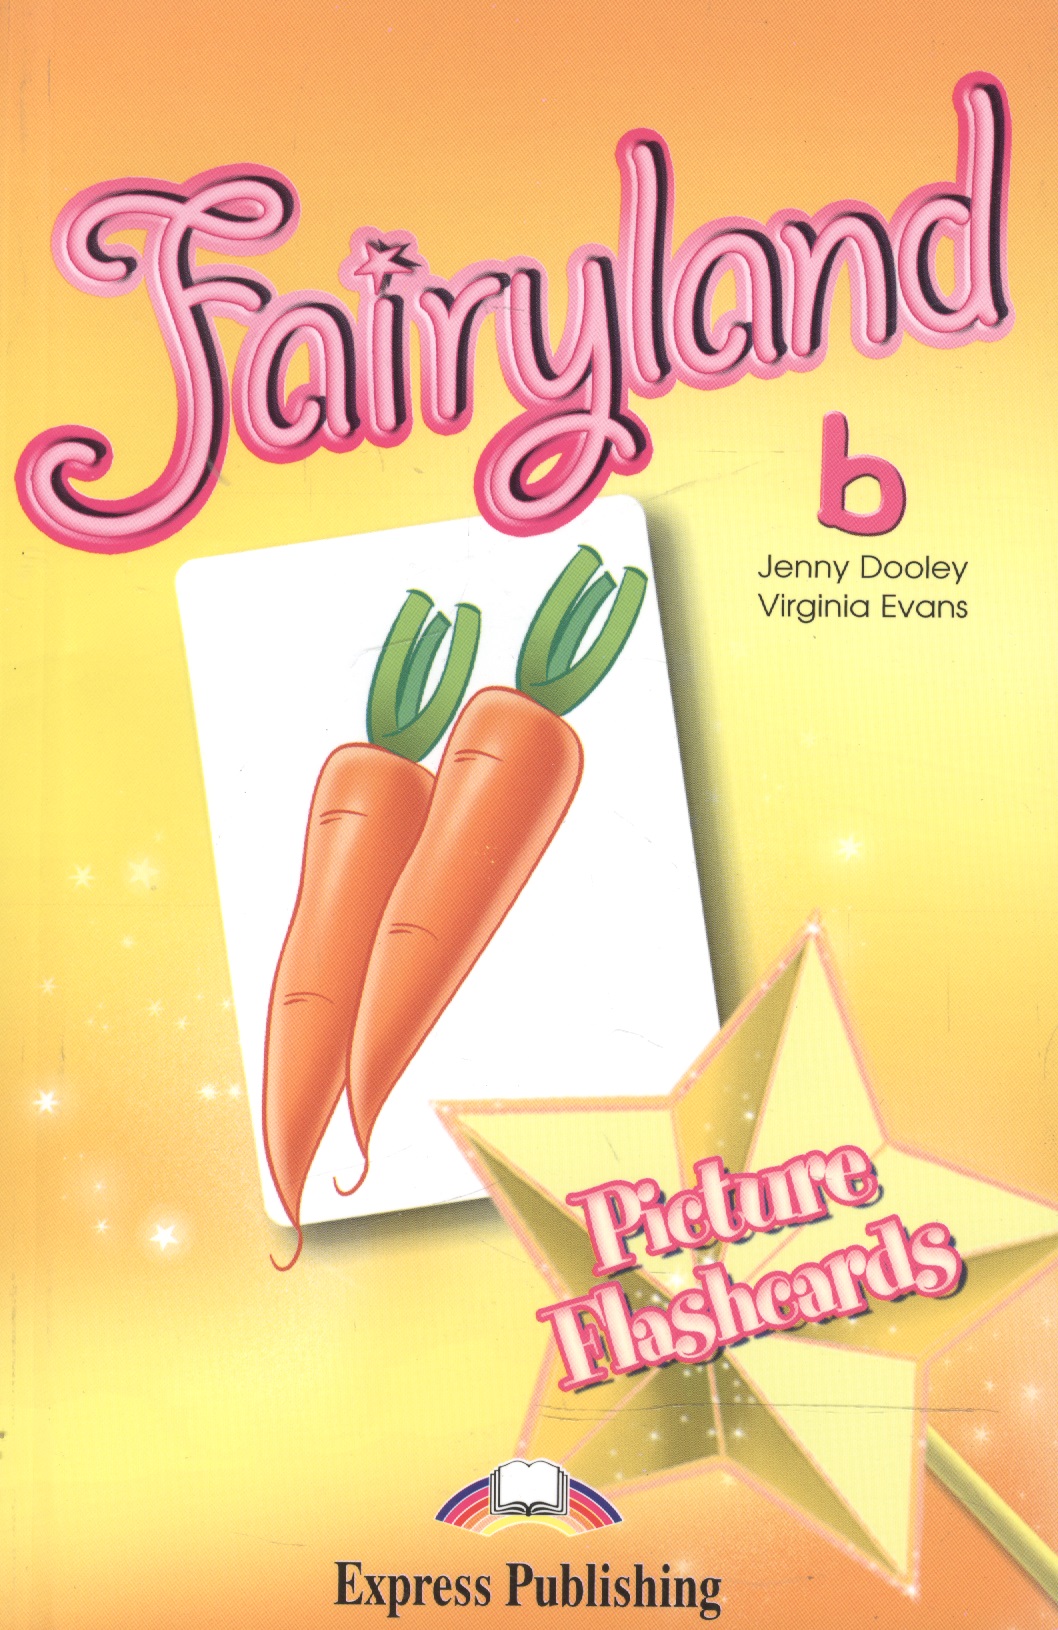 Эванс Вирджиния Fairyland 2. Picture Flashcards. Beginner. Раздаточный материал эванс вирджиния fairyland 3 vocabulary